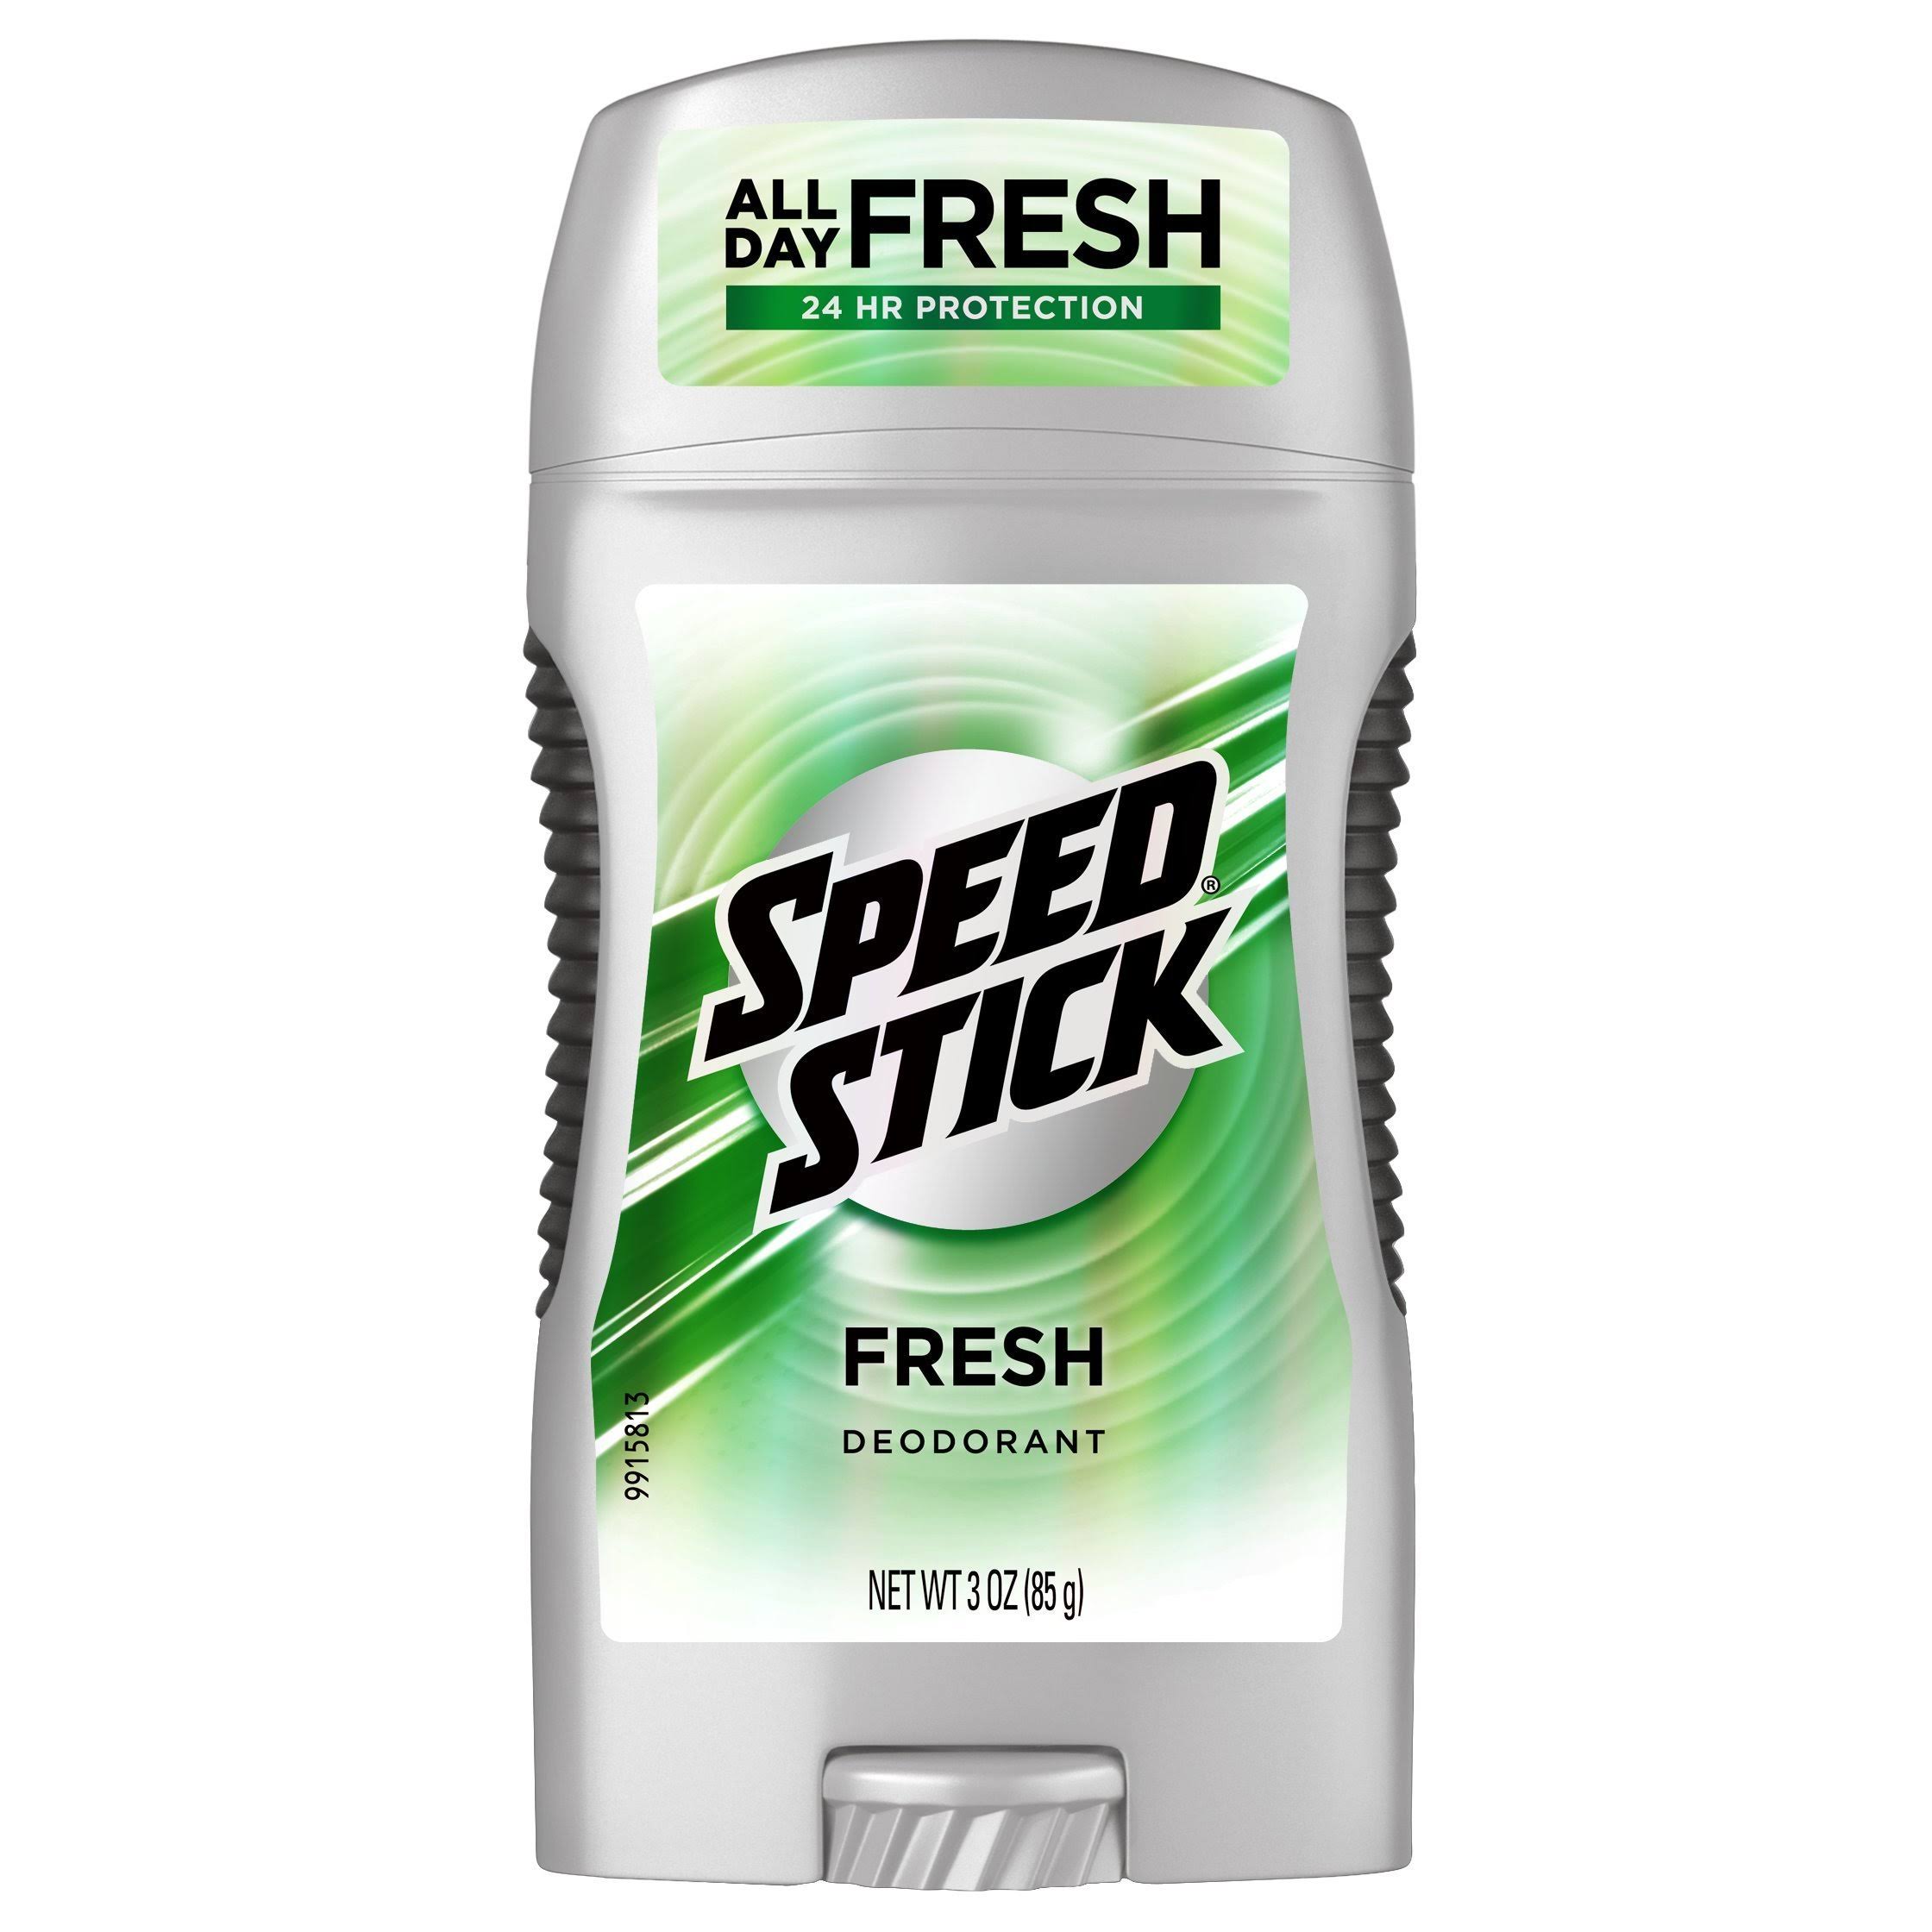 Mennen Speed Stick Deodorant - Fresh Scent, 3oz